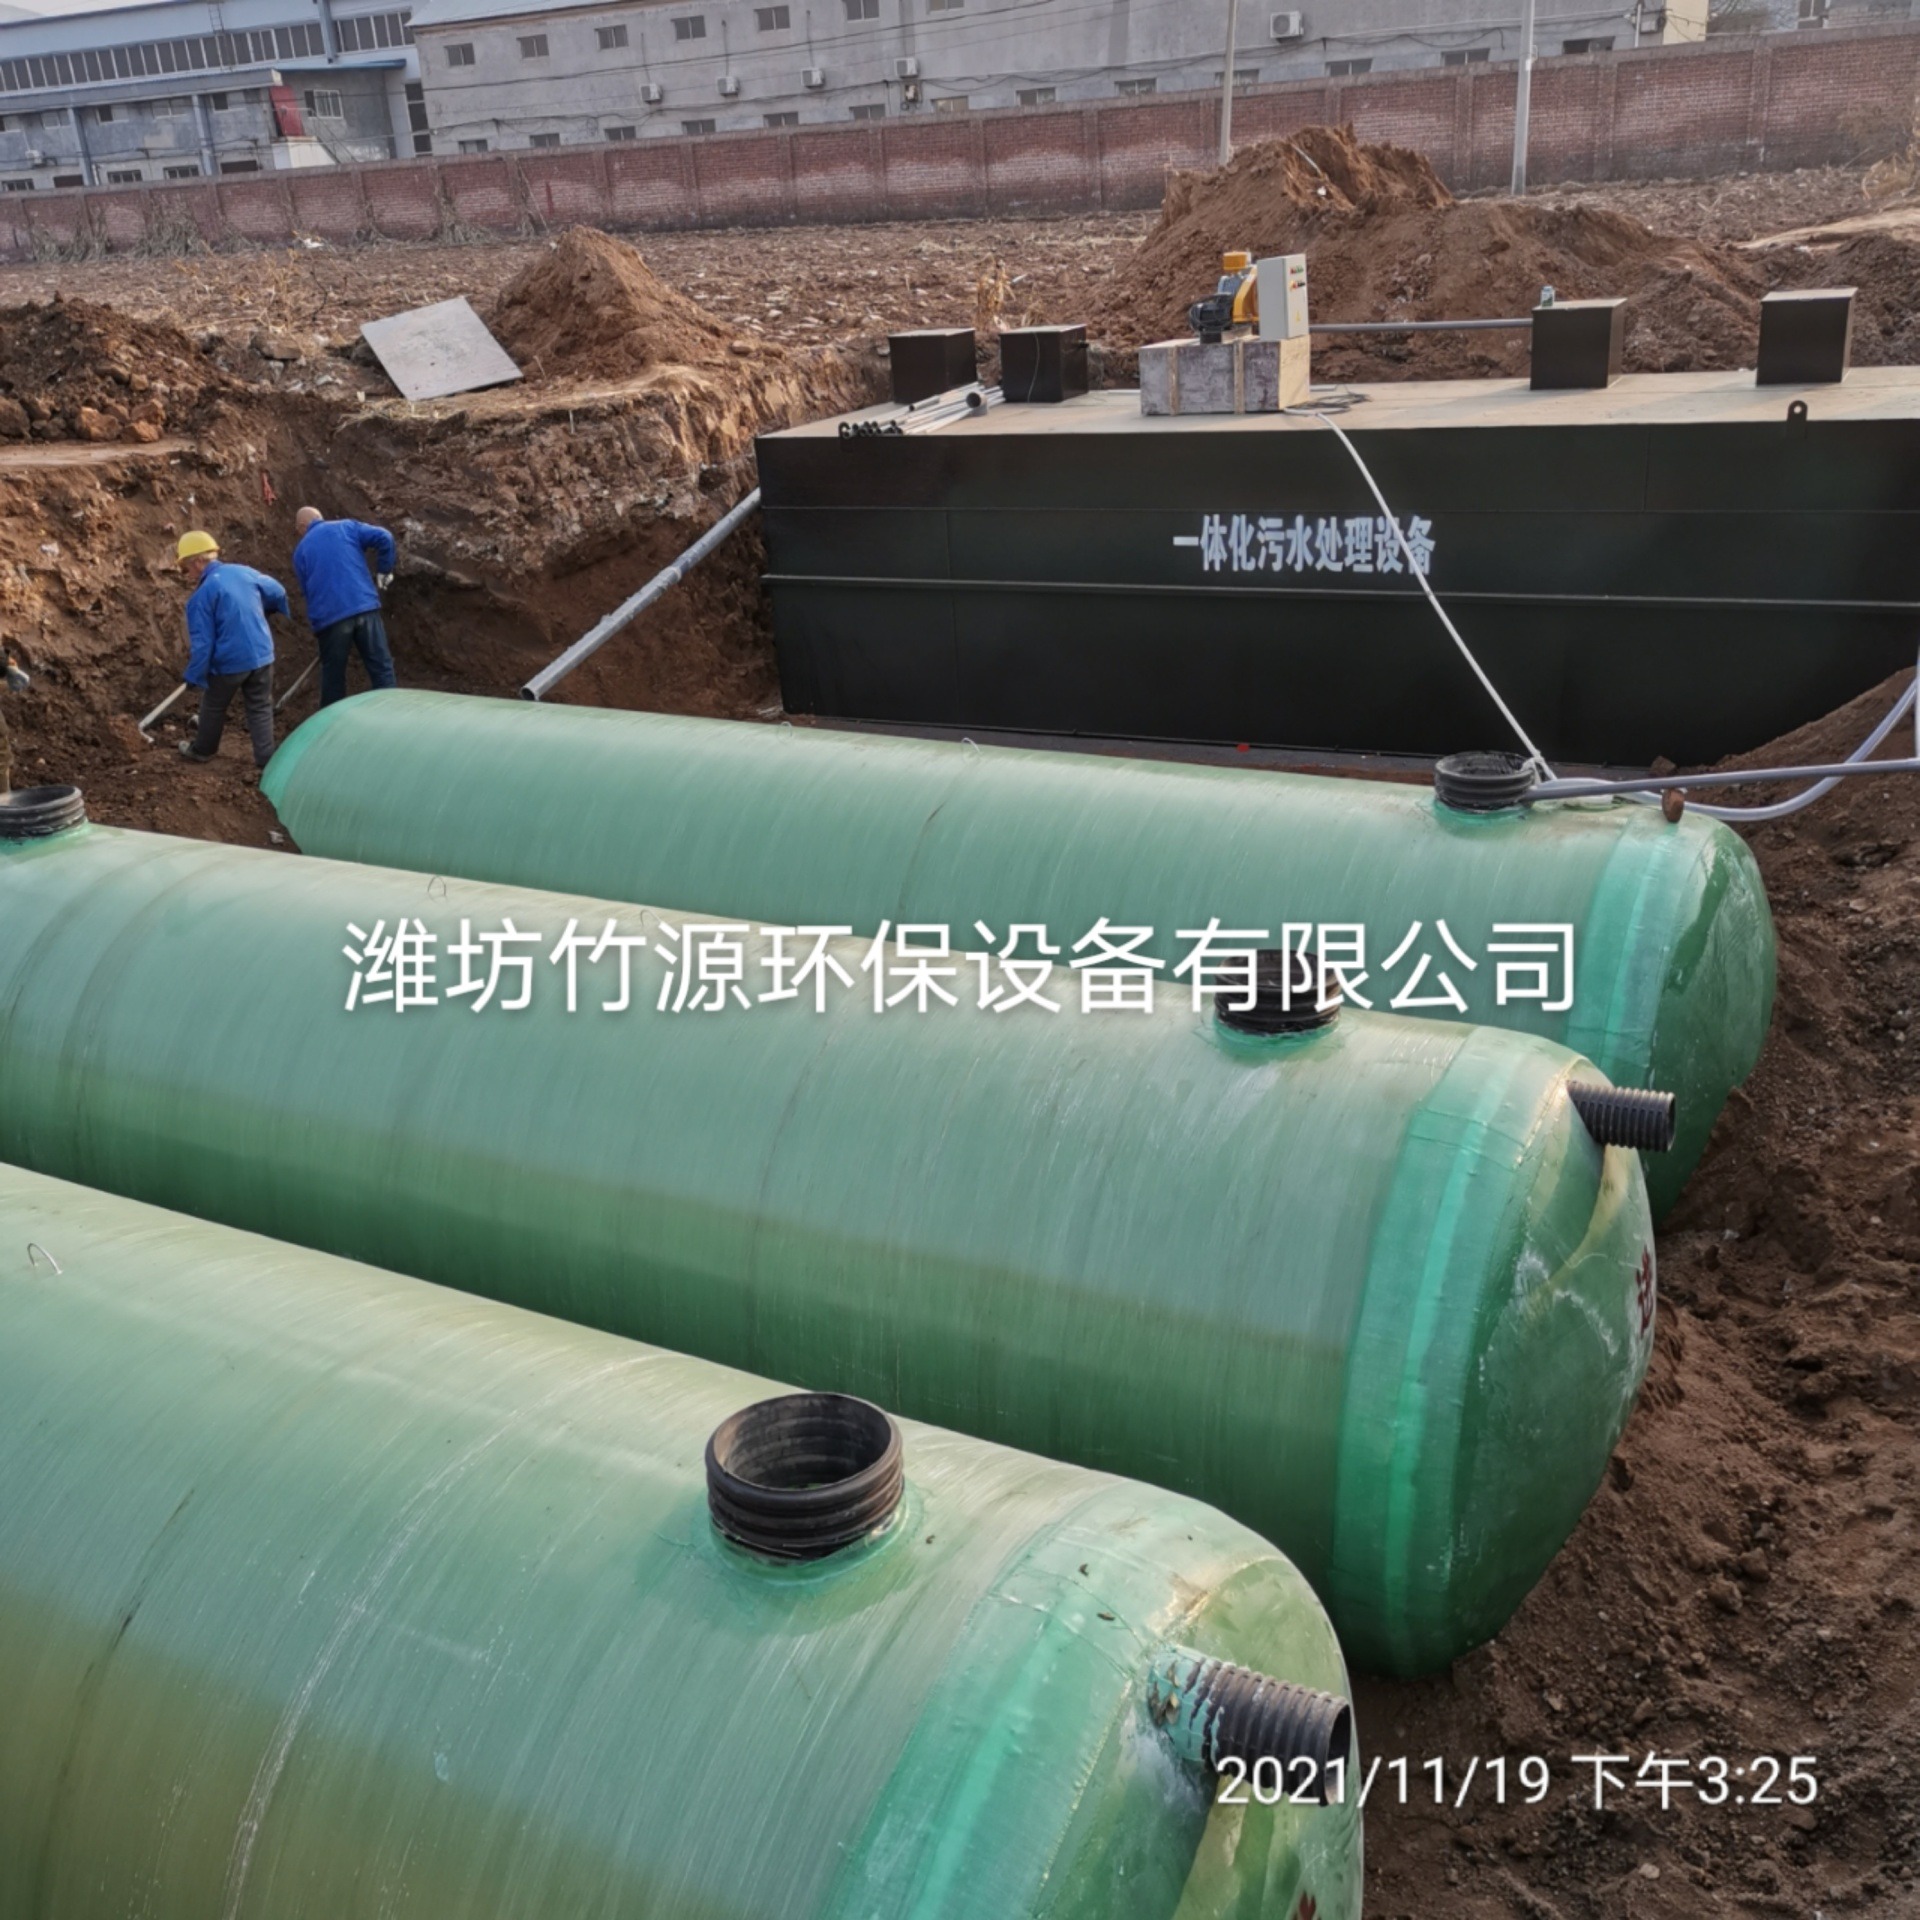 生活污水处理设备 学校一体化污水处理设备 竹源供应